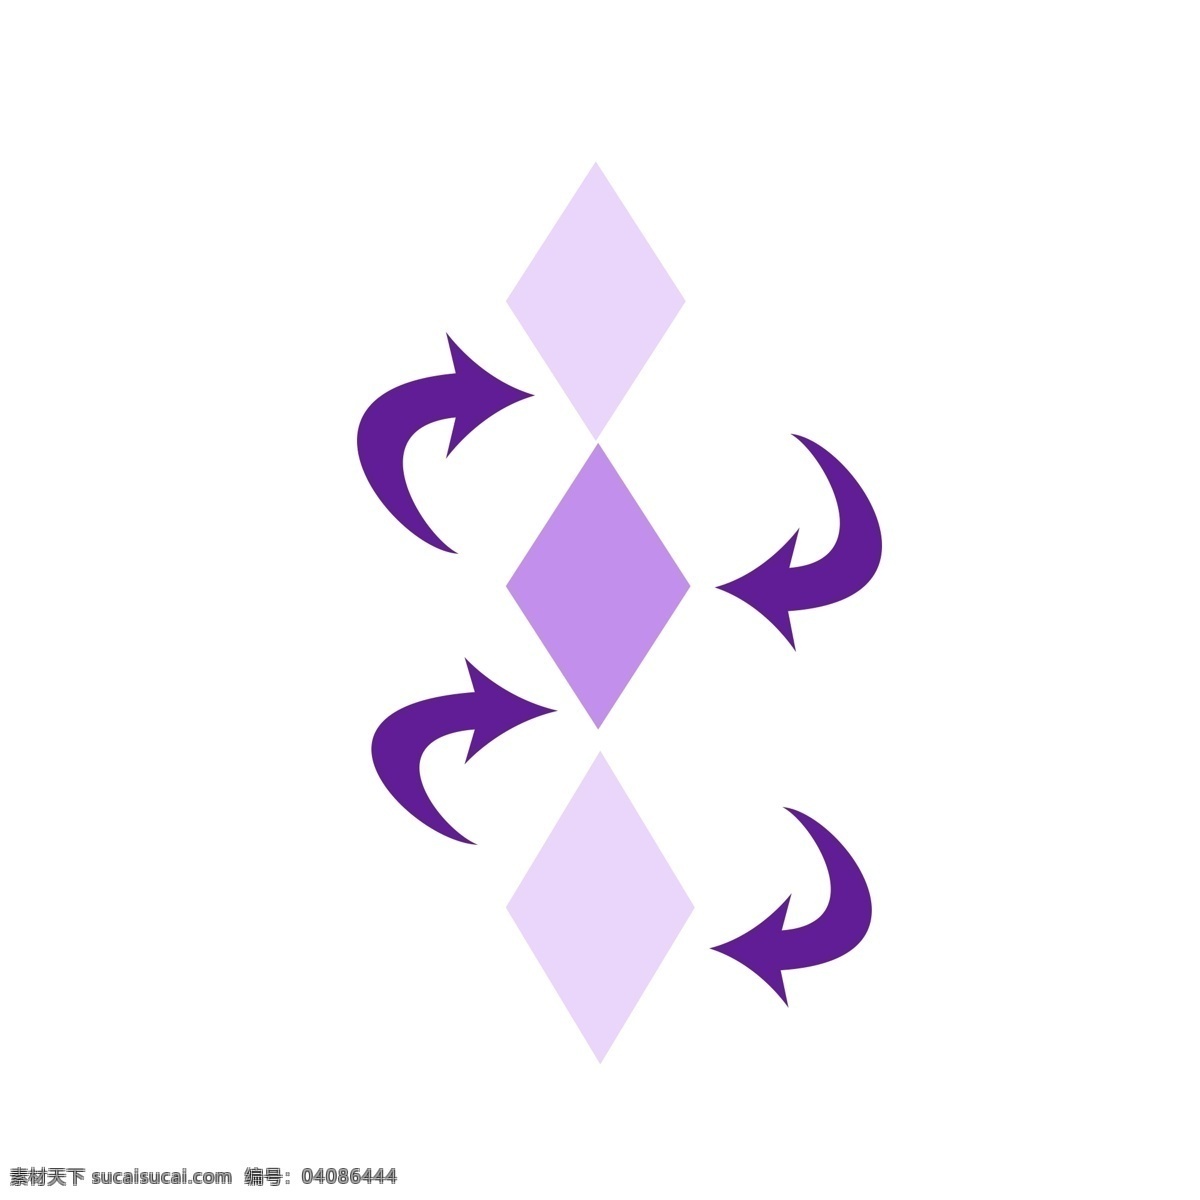 弯曲 箭头 创意 装饰 目录图表 信息 图表 商务 弯曲箭头装饰 菱形装饰 紫色 浅色